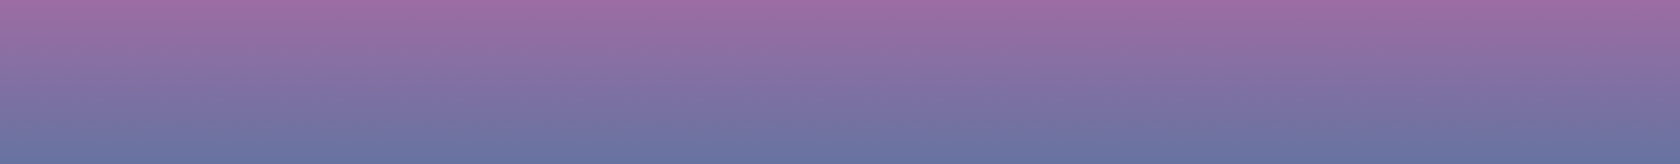 фиолетовый фон, фиолетовый прямоугольник, фиолетовый четырехугольник, фиолетовый фигура 